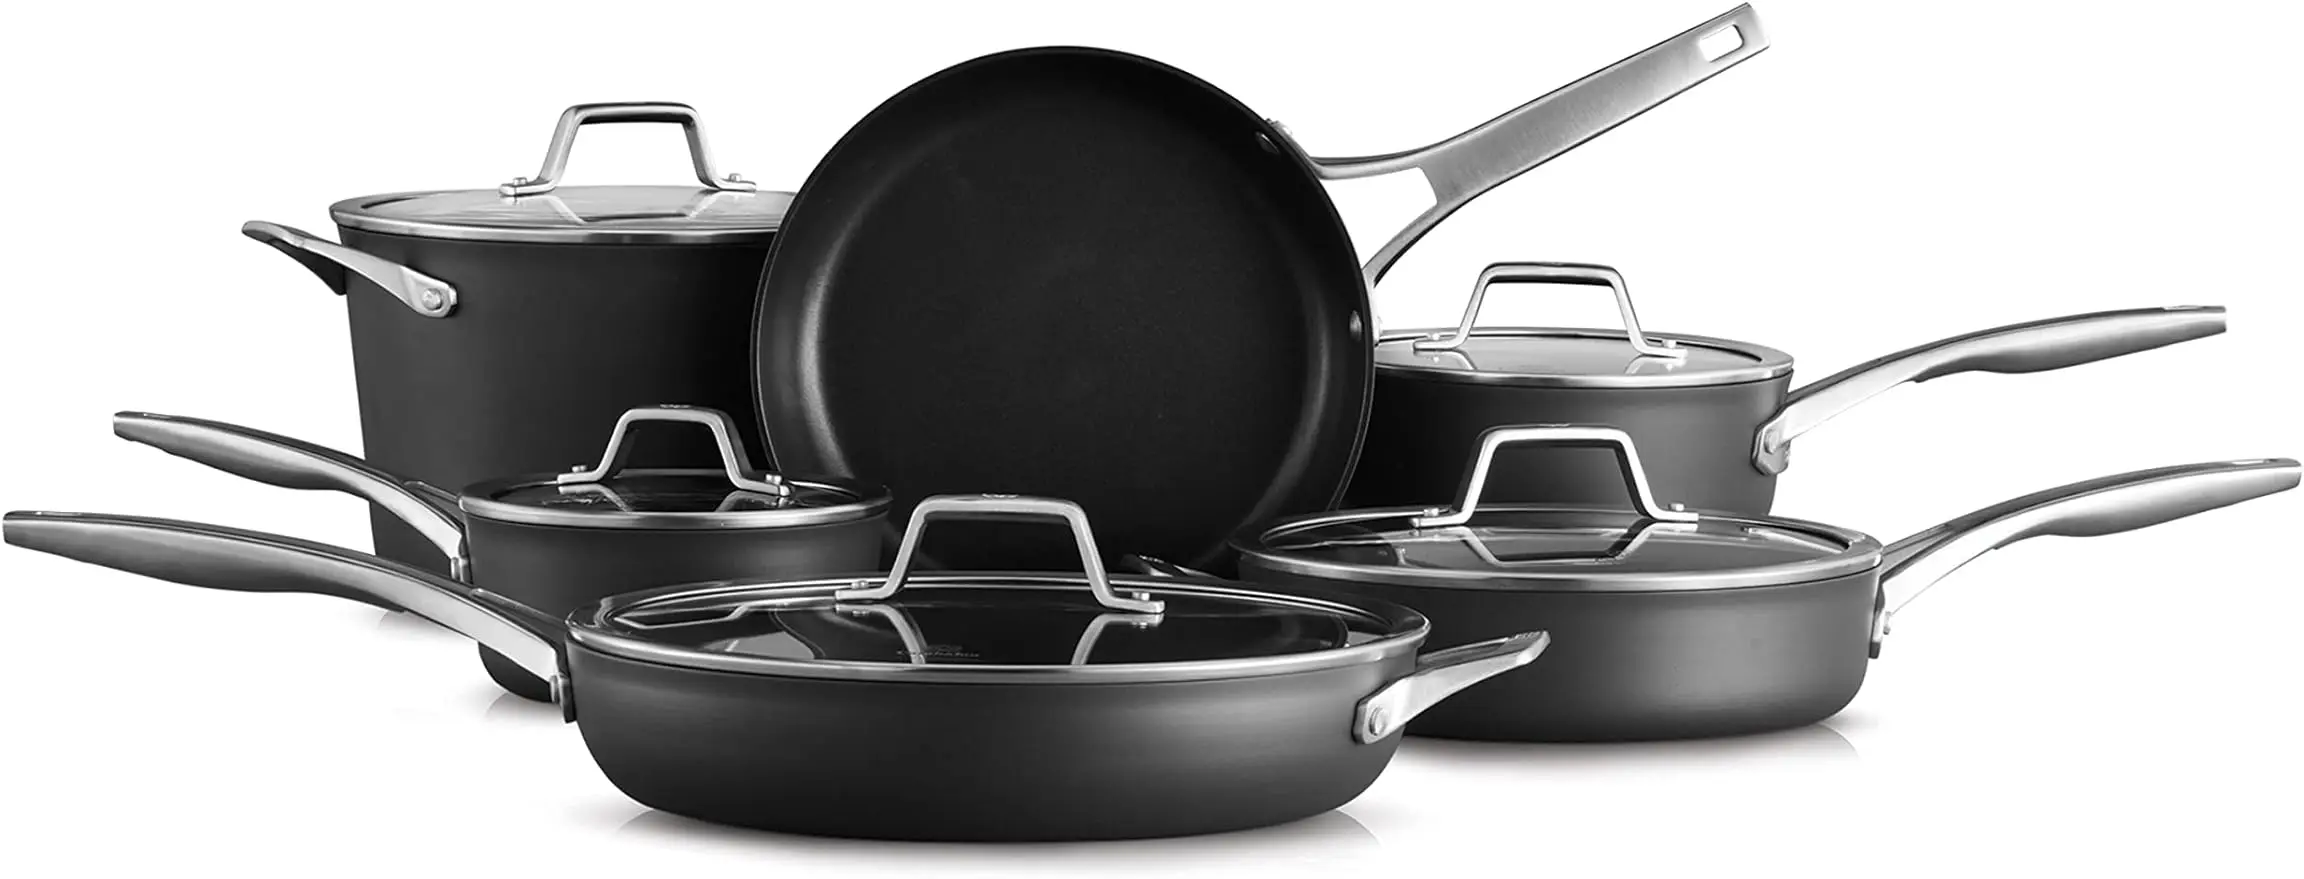 

Calphalon Premier Hard-Anodized Nonstick Cookware, 11-Piece Pots and Pans Set